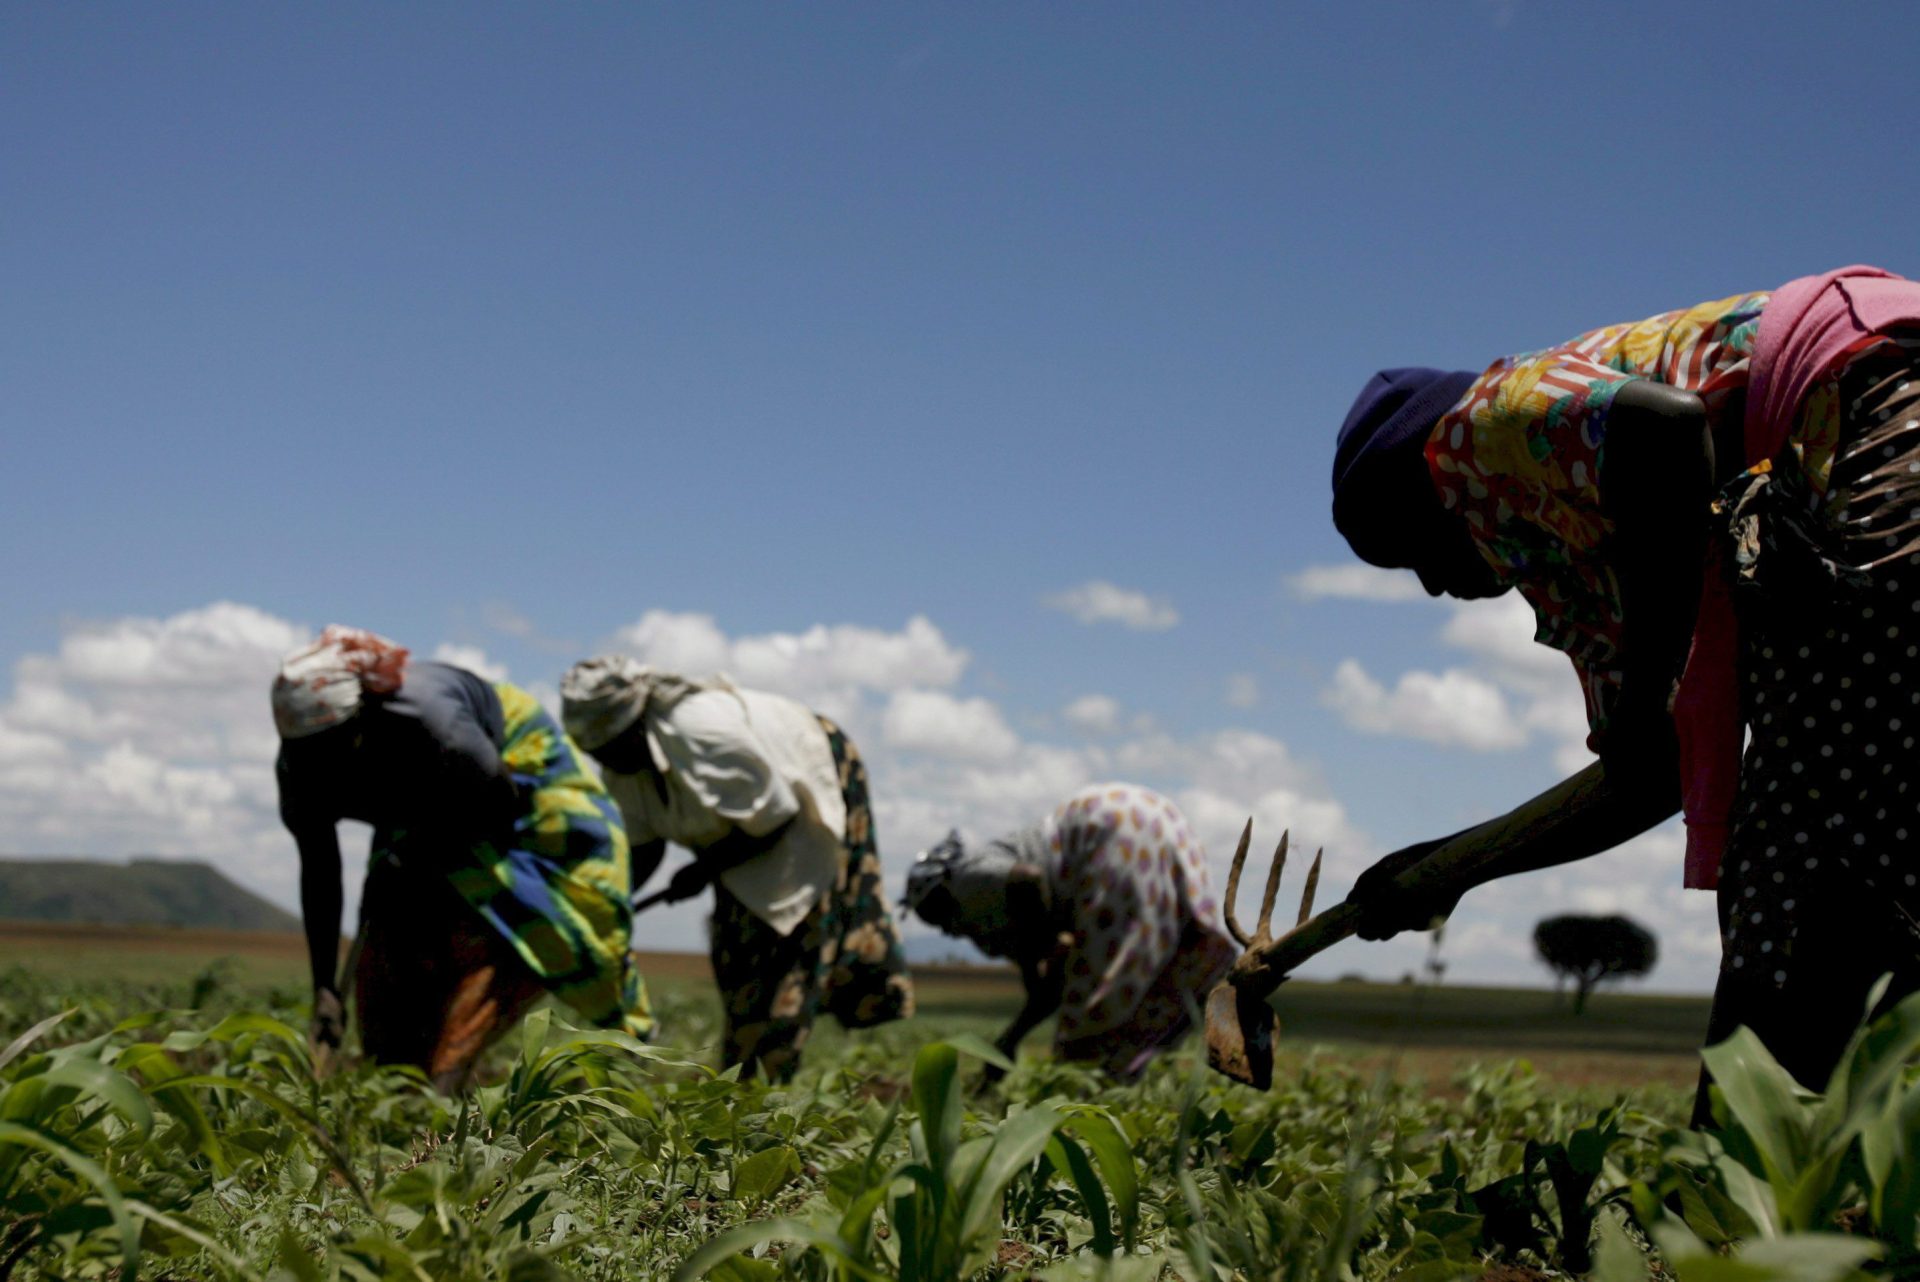 Unas mujeres desarrollan labores de agricultura en un campo de maíz en Kenia.